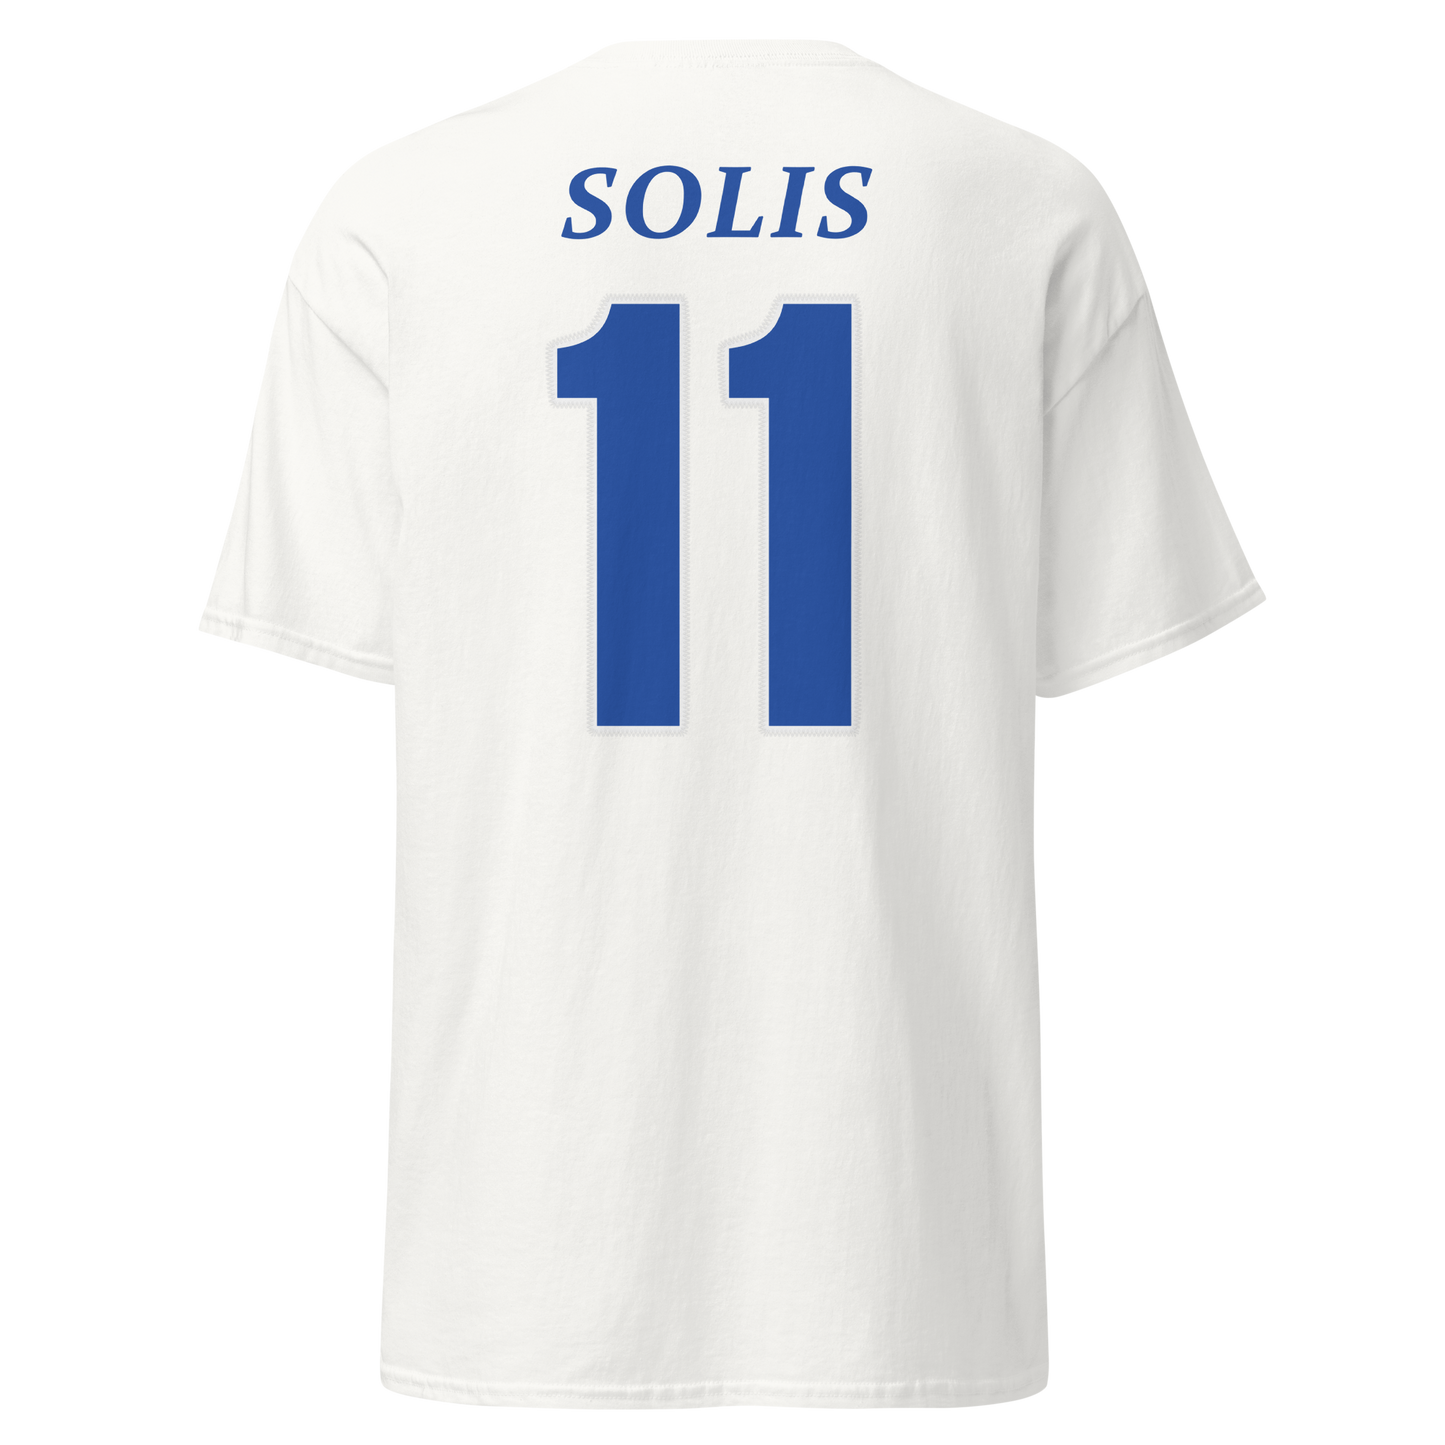 Edwin Solis | Jersey-Style Shirt